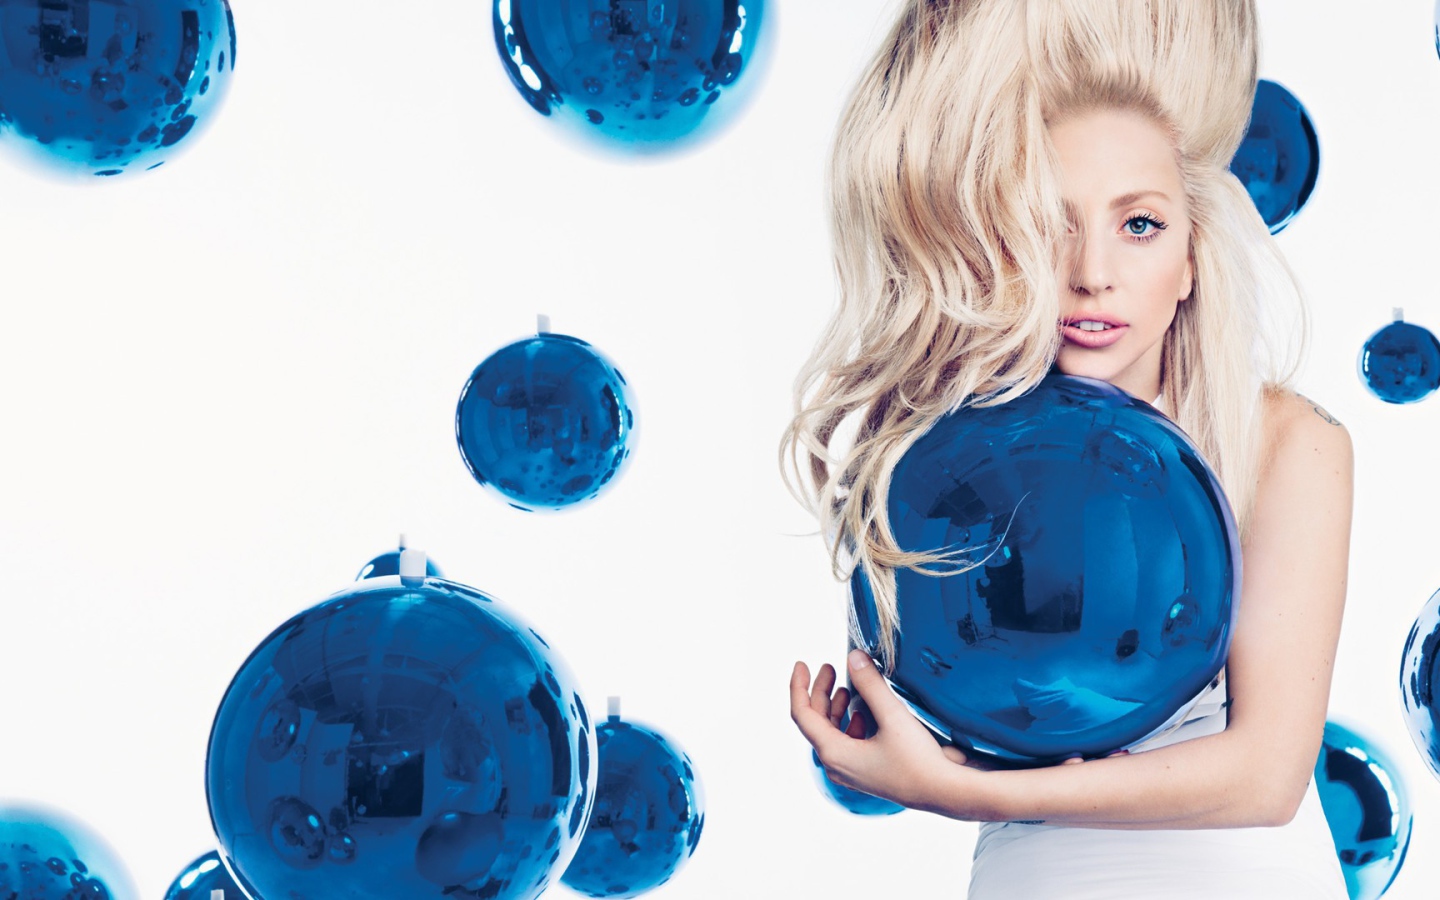 Girl among blue balls